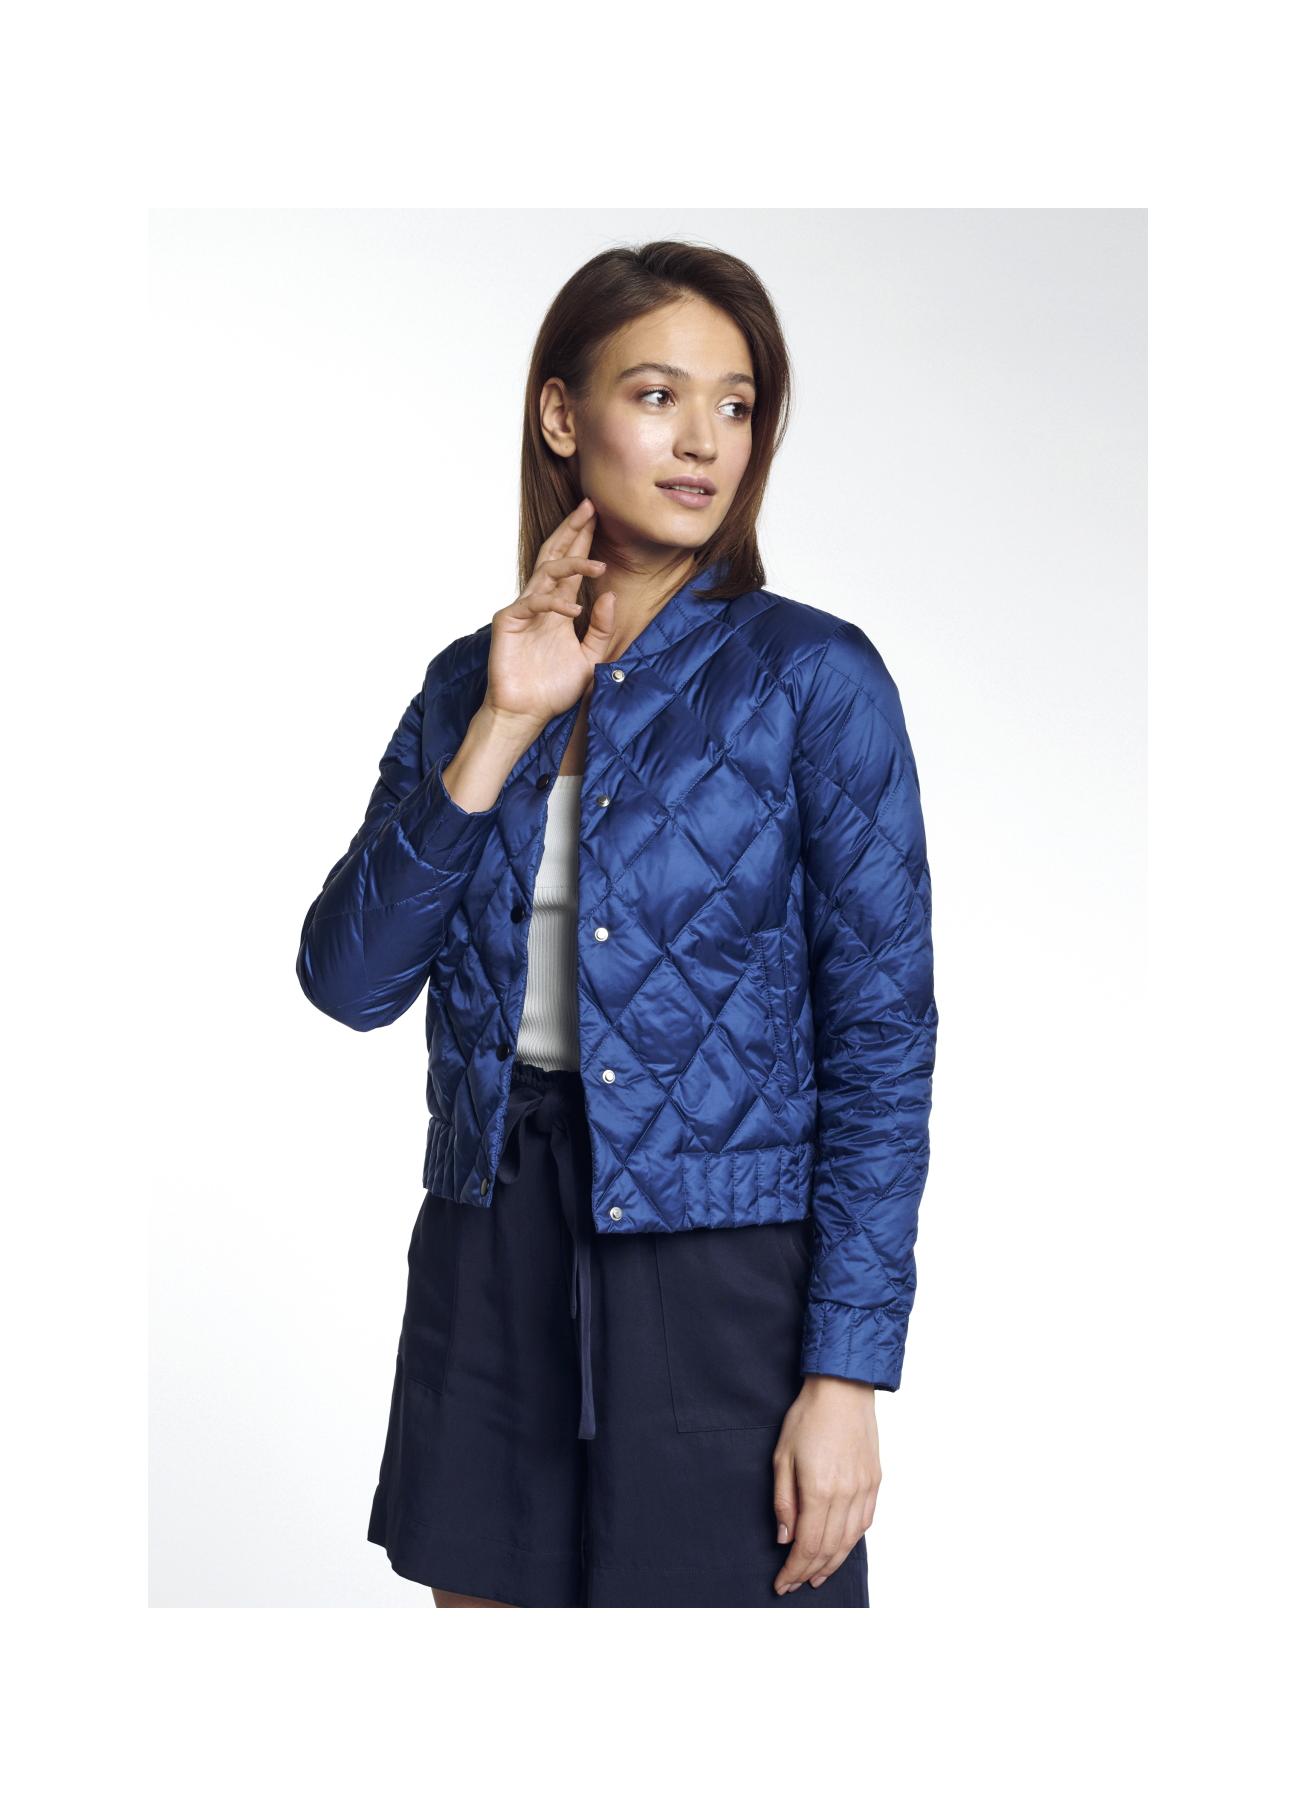 Niebieska pikowana kurtka damska KURDT-0290-69(W21)